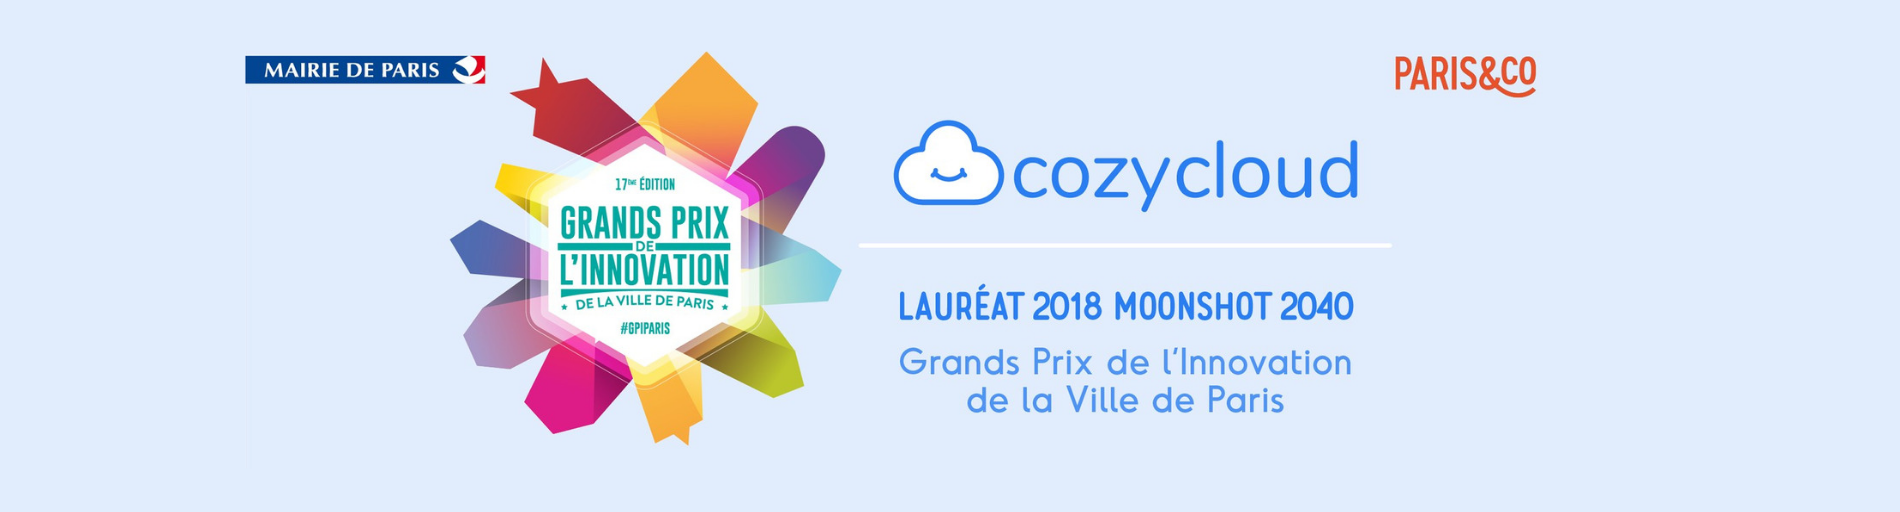 Cozy Cloud est Lauréat 2018 du Grand Prix de l'Innovation de la Ville de Paris